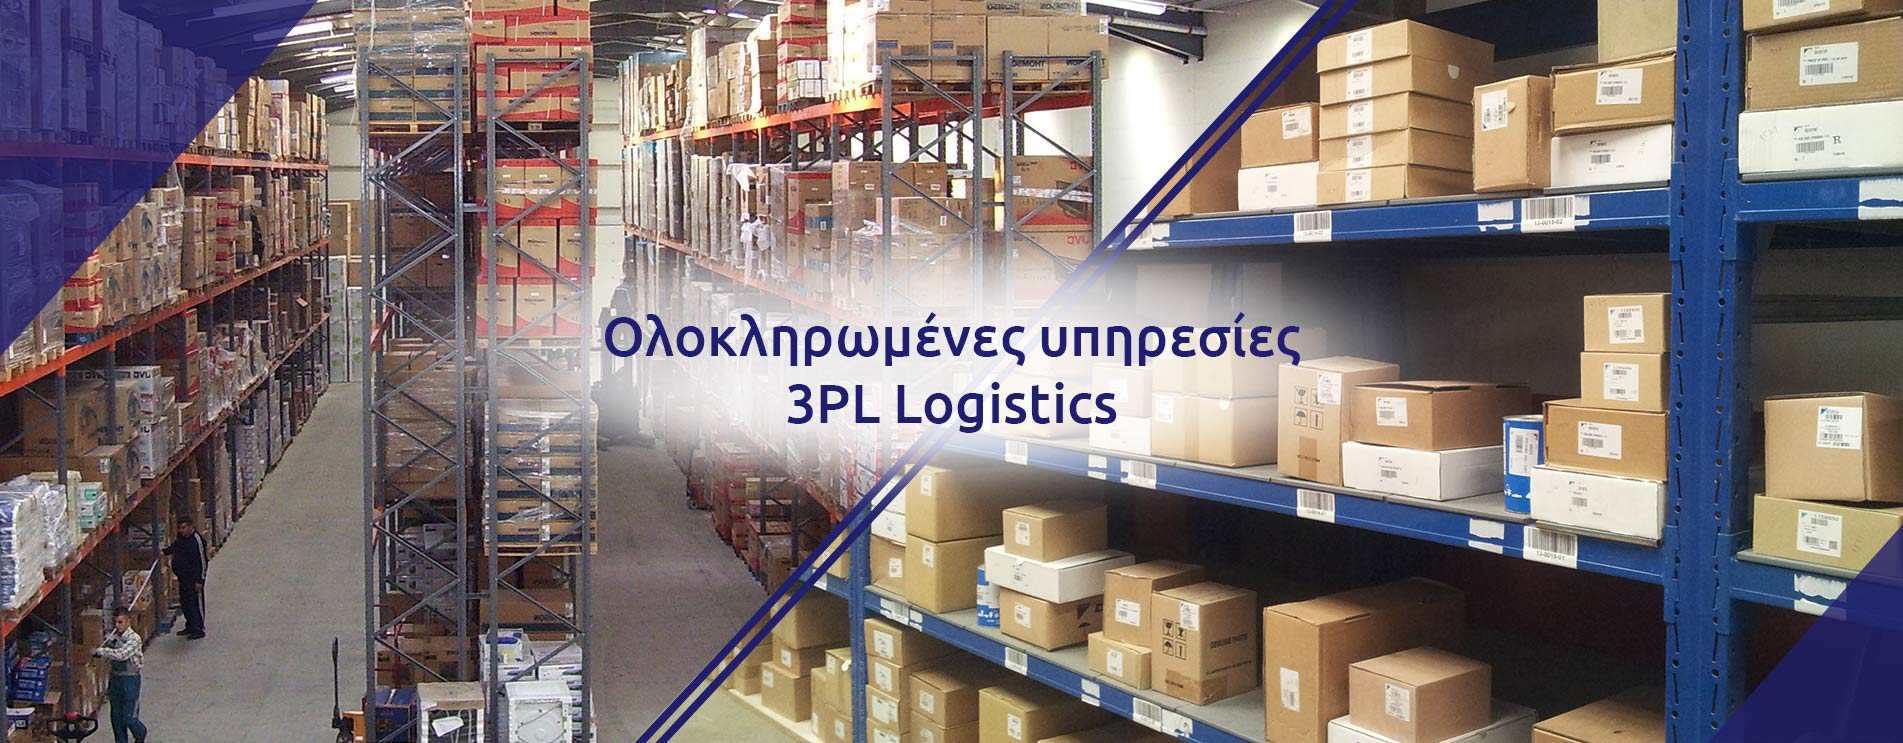 Ολοκληρωμένες υπηρεσίες 3PL Logistics